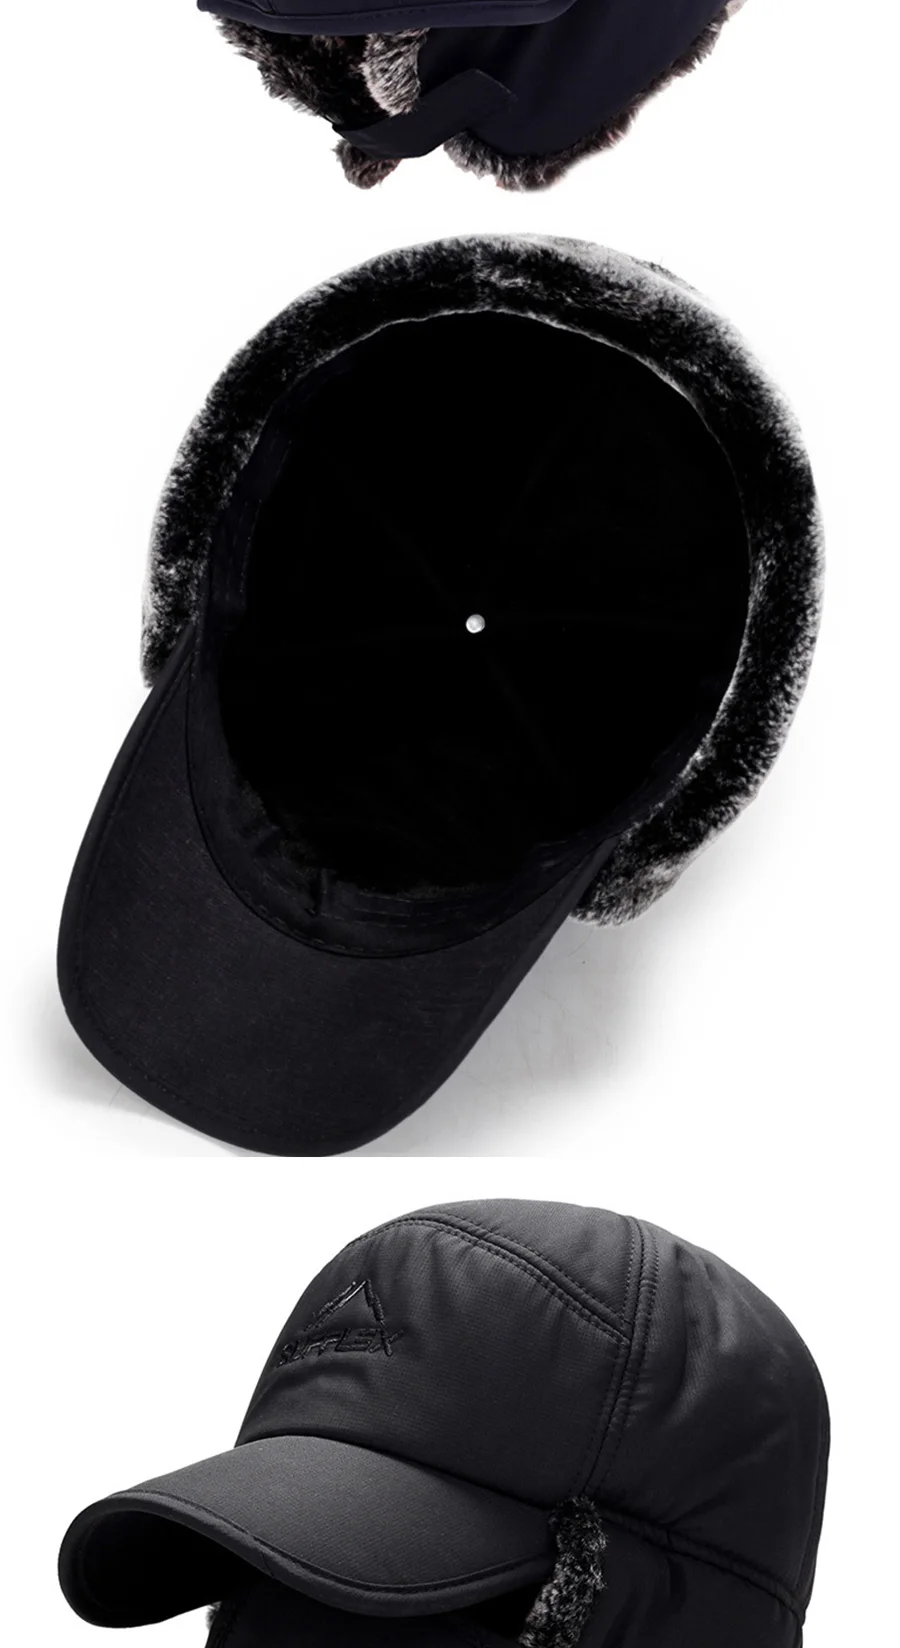 [FEILEDIS] для мужчин и женщин открытый шлем в масках меховые шапки зимние женские толстые теплые удерживающие Уши Защита Велосипедный спорт Велоспорт SkiingHat